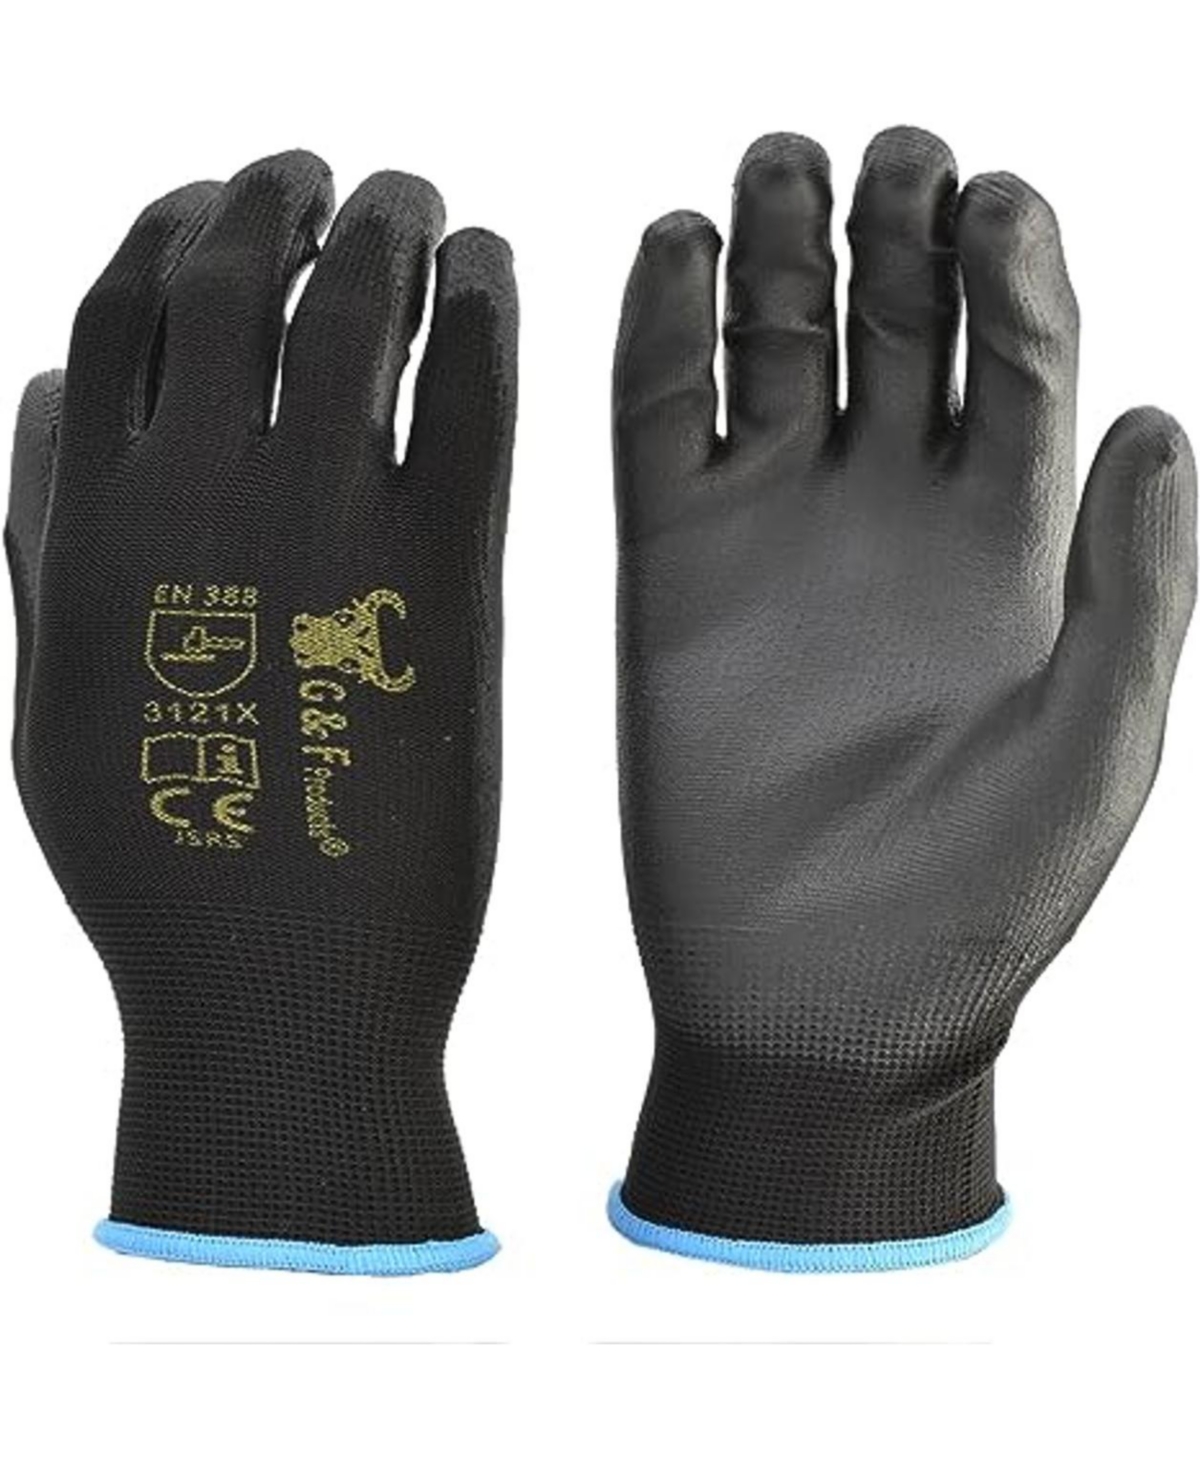 12 Pairs Men Work Gloves, Lightweight Grip Gloves For Work - Black